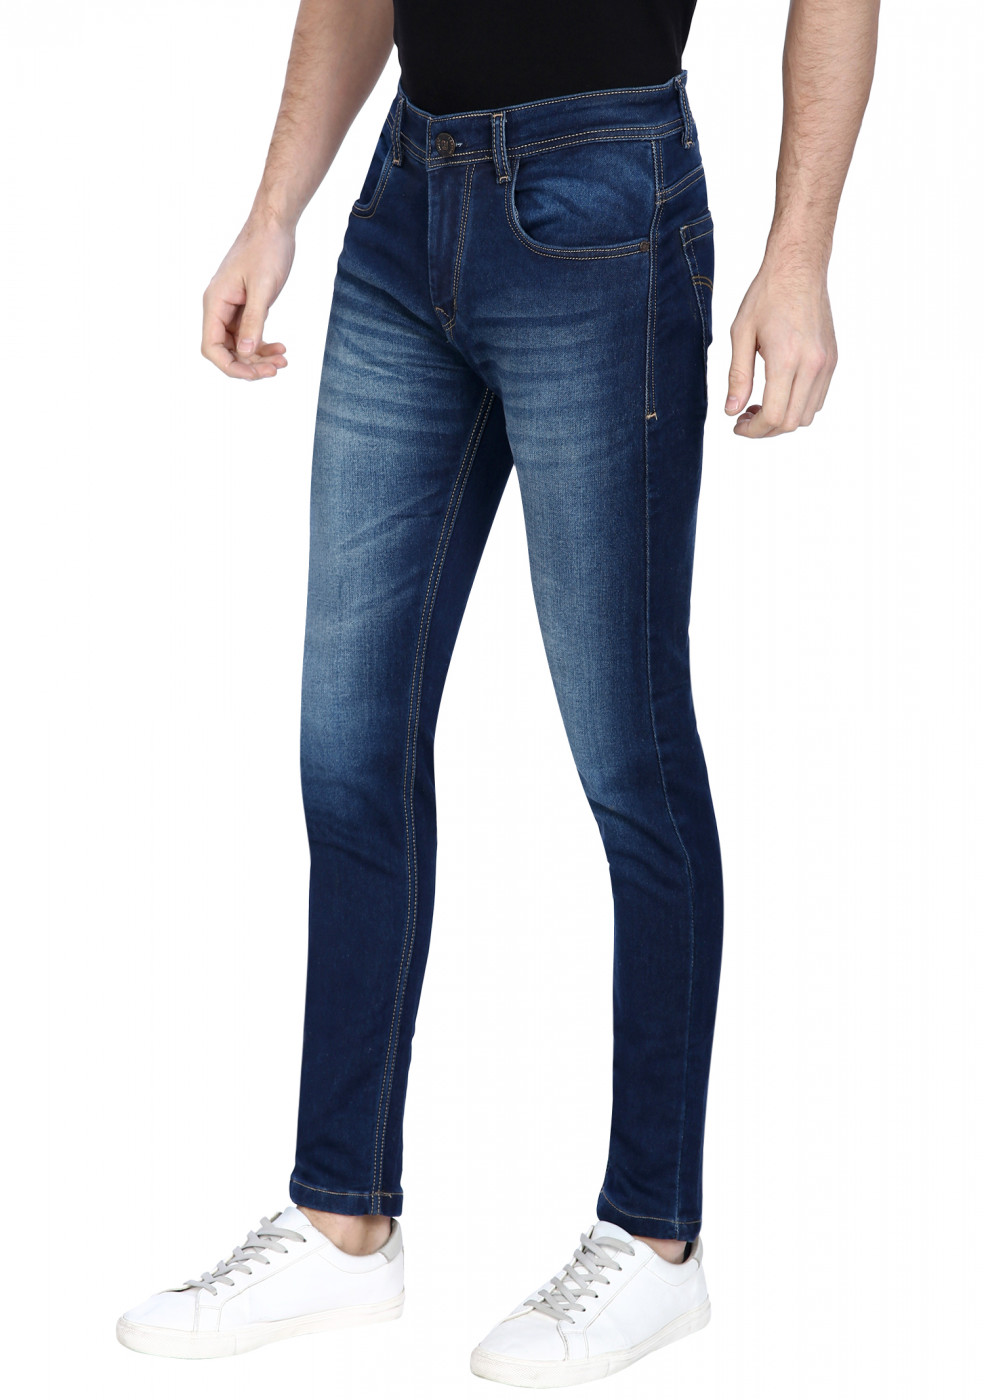 Blue Stretchable Denim Jeans For Men